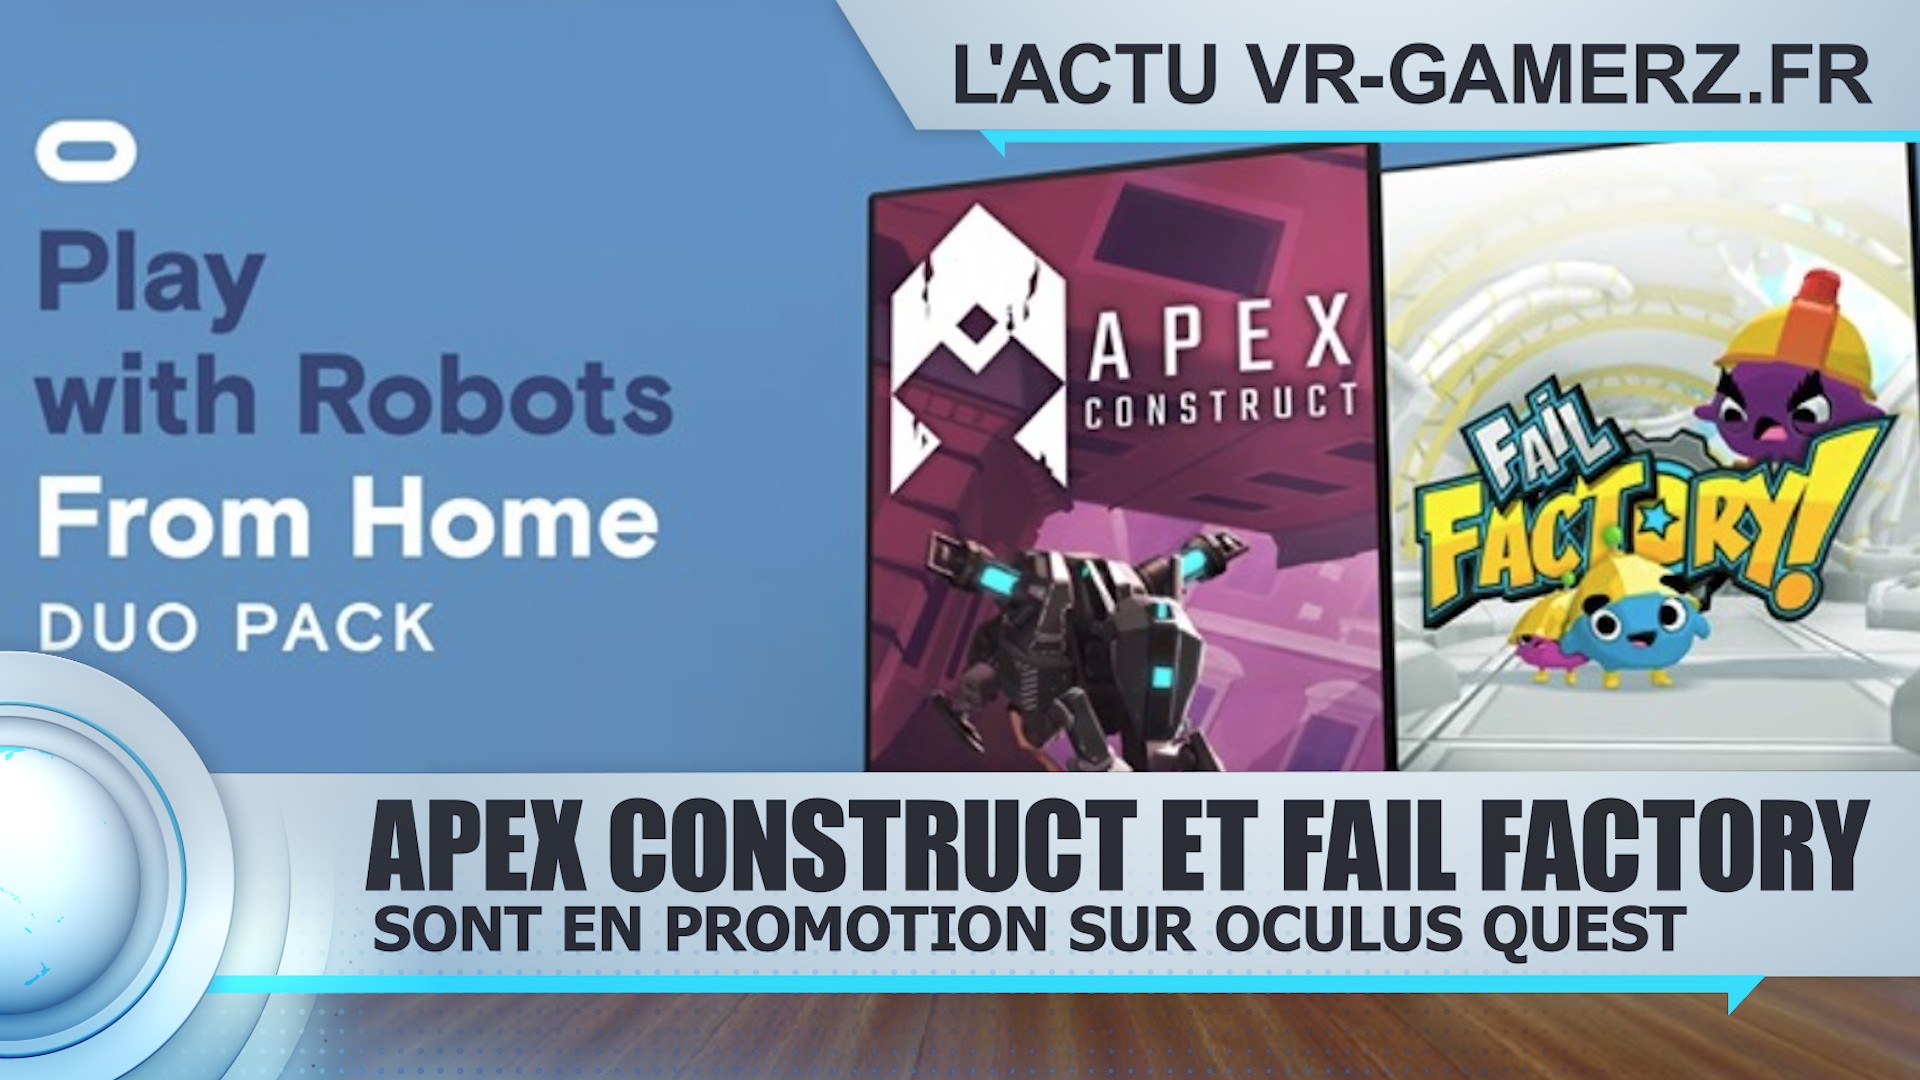 Fail factory et Apex construct Oculus quest sont en promotion.